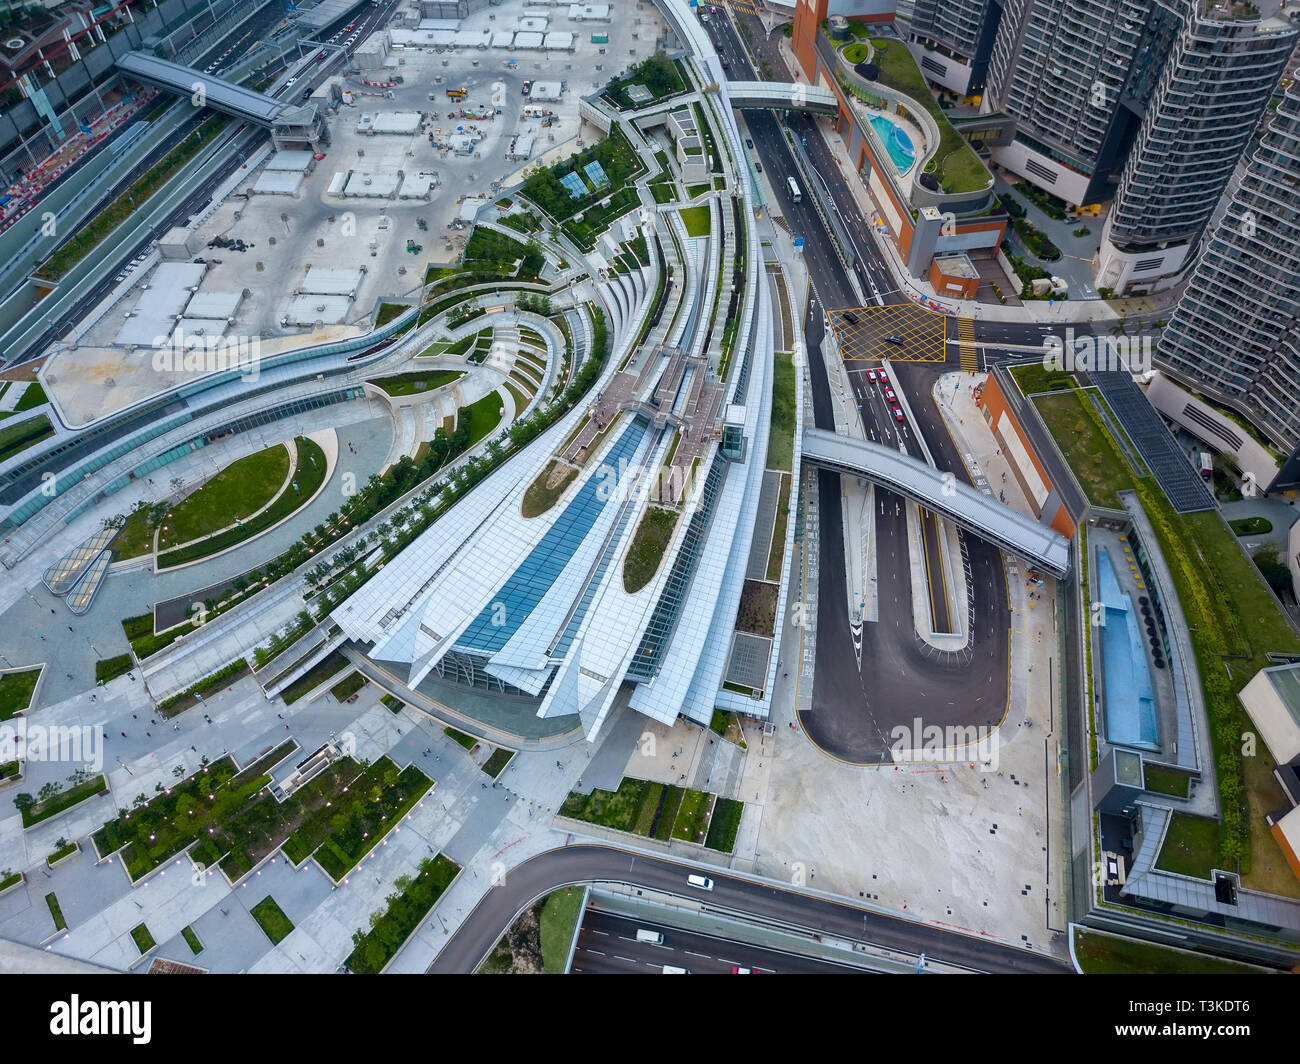 Vue aérienne de l'Ouest nouveau Rail Express Kowloon Link-Hong Kong à la gare principale de la Chine, Hong Kong, Chine. Banque D'Images